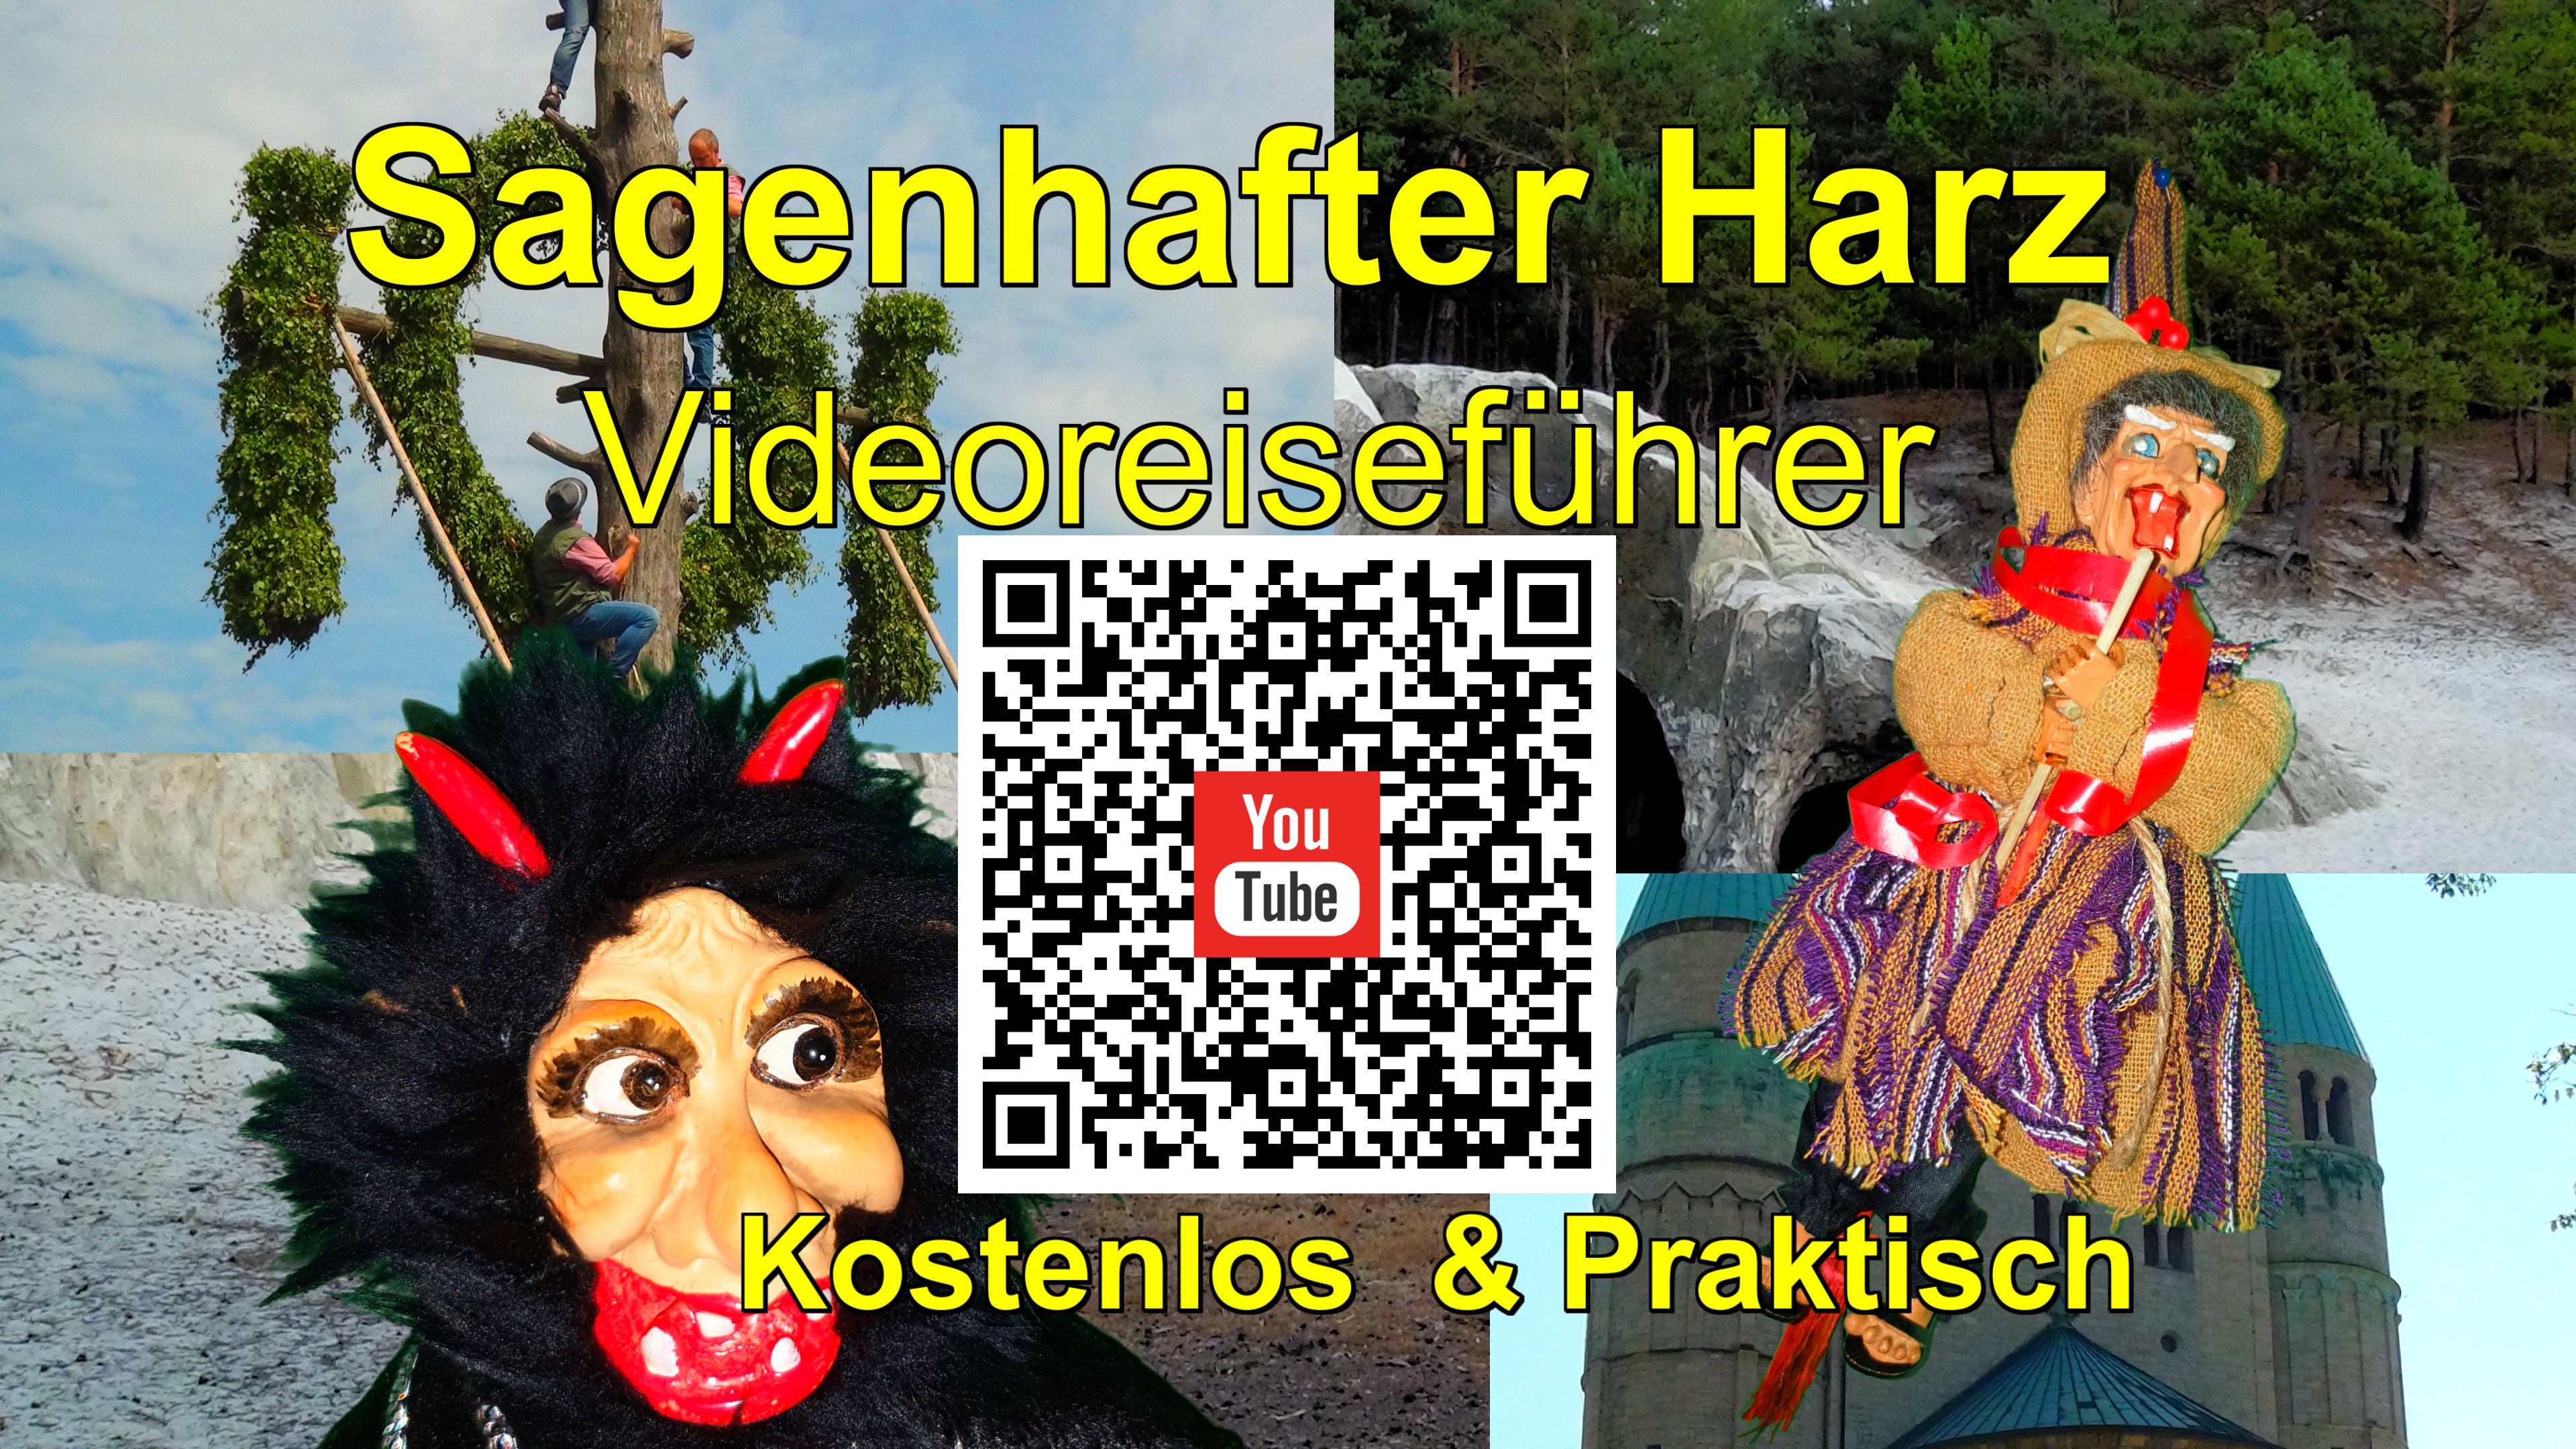 Harz Videoreisefhrer 2021 